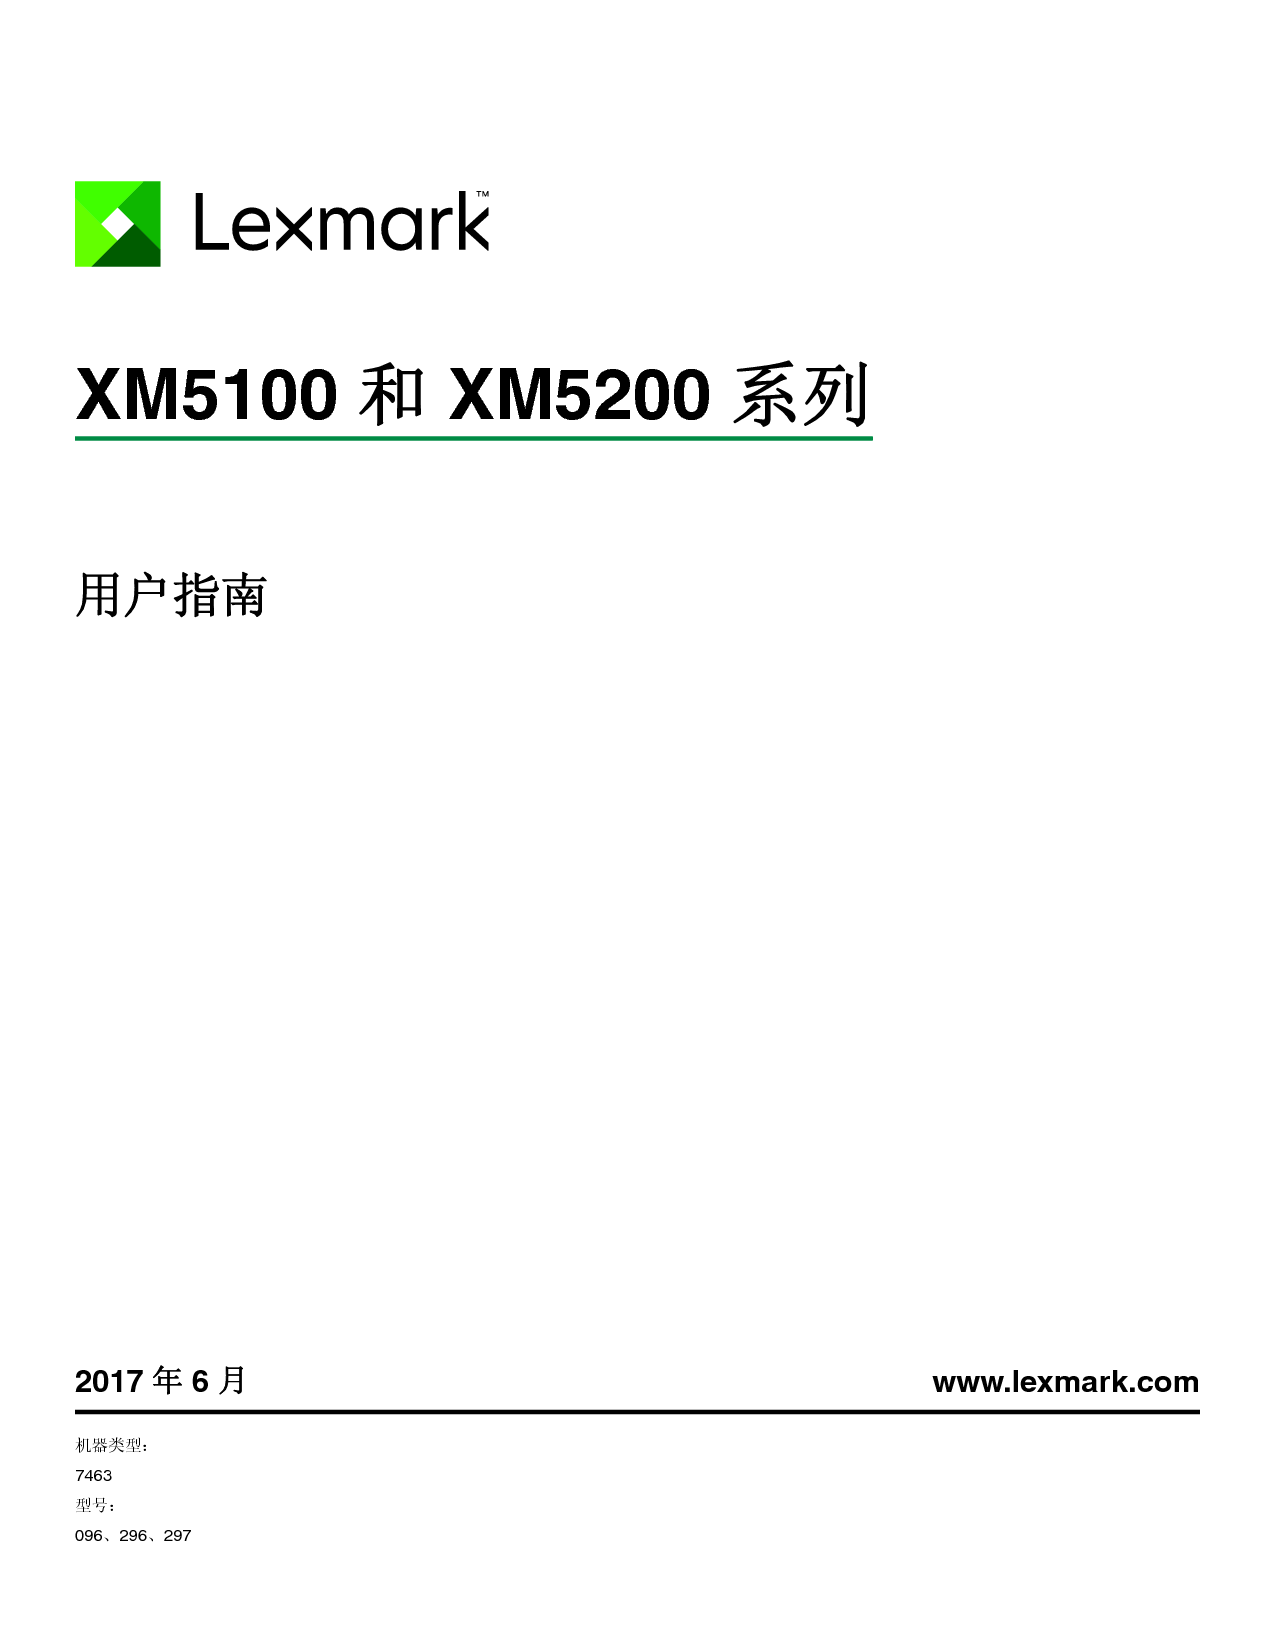 利盟 Lexmark XM5163, XM5270 用户指南 封面